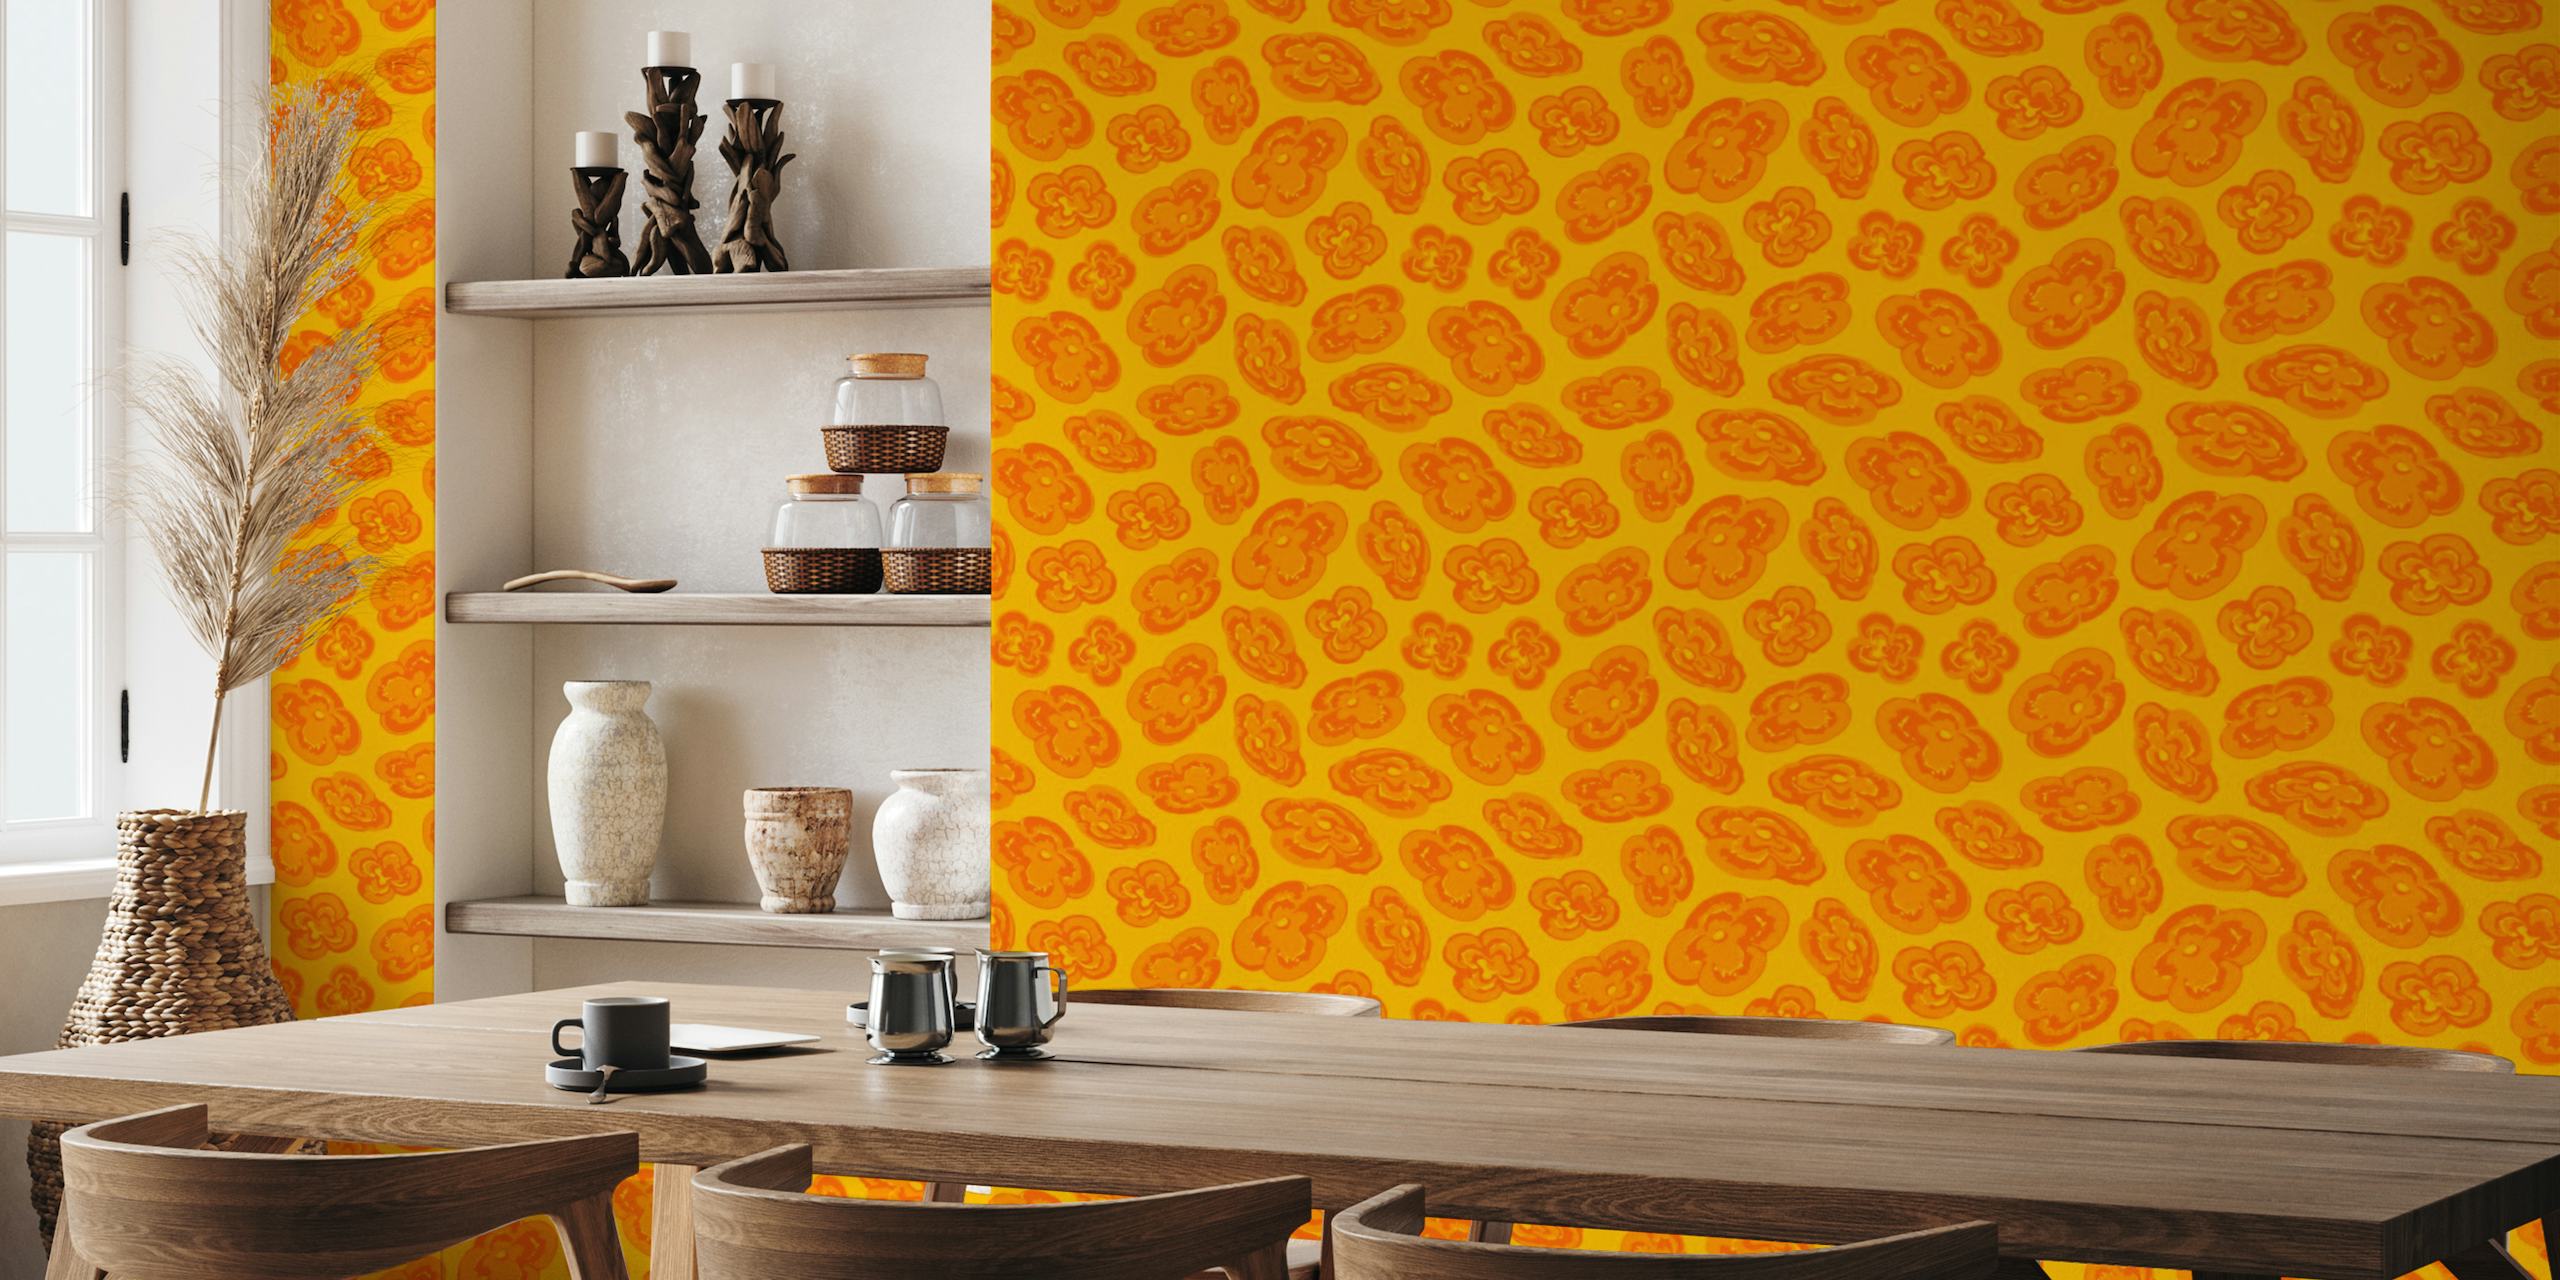 Abstrakt gult veggmaleri med oransje liljemønstre for hjemmeinnredning